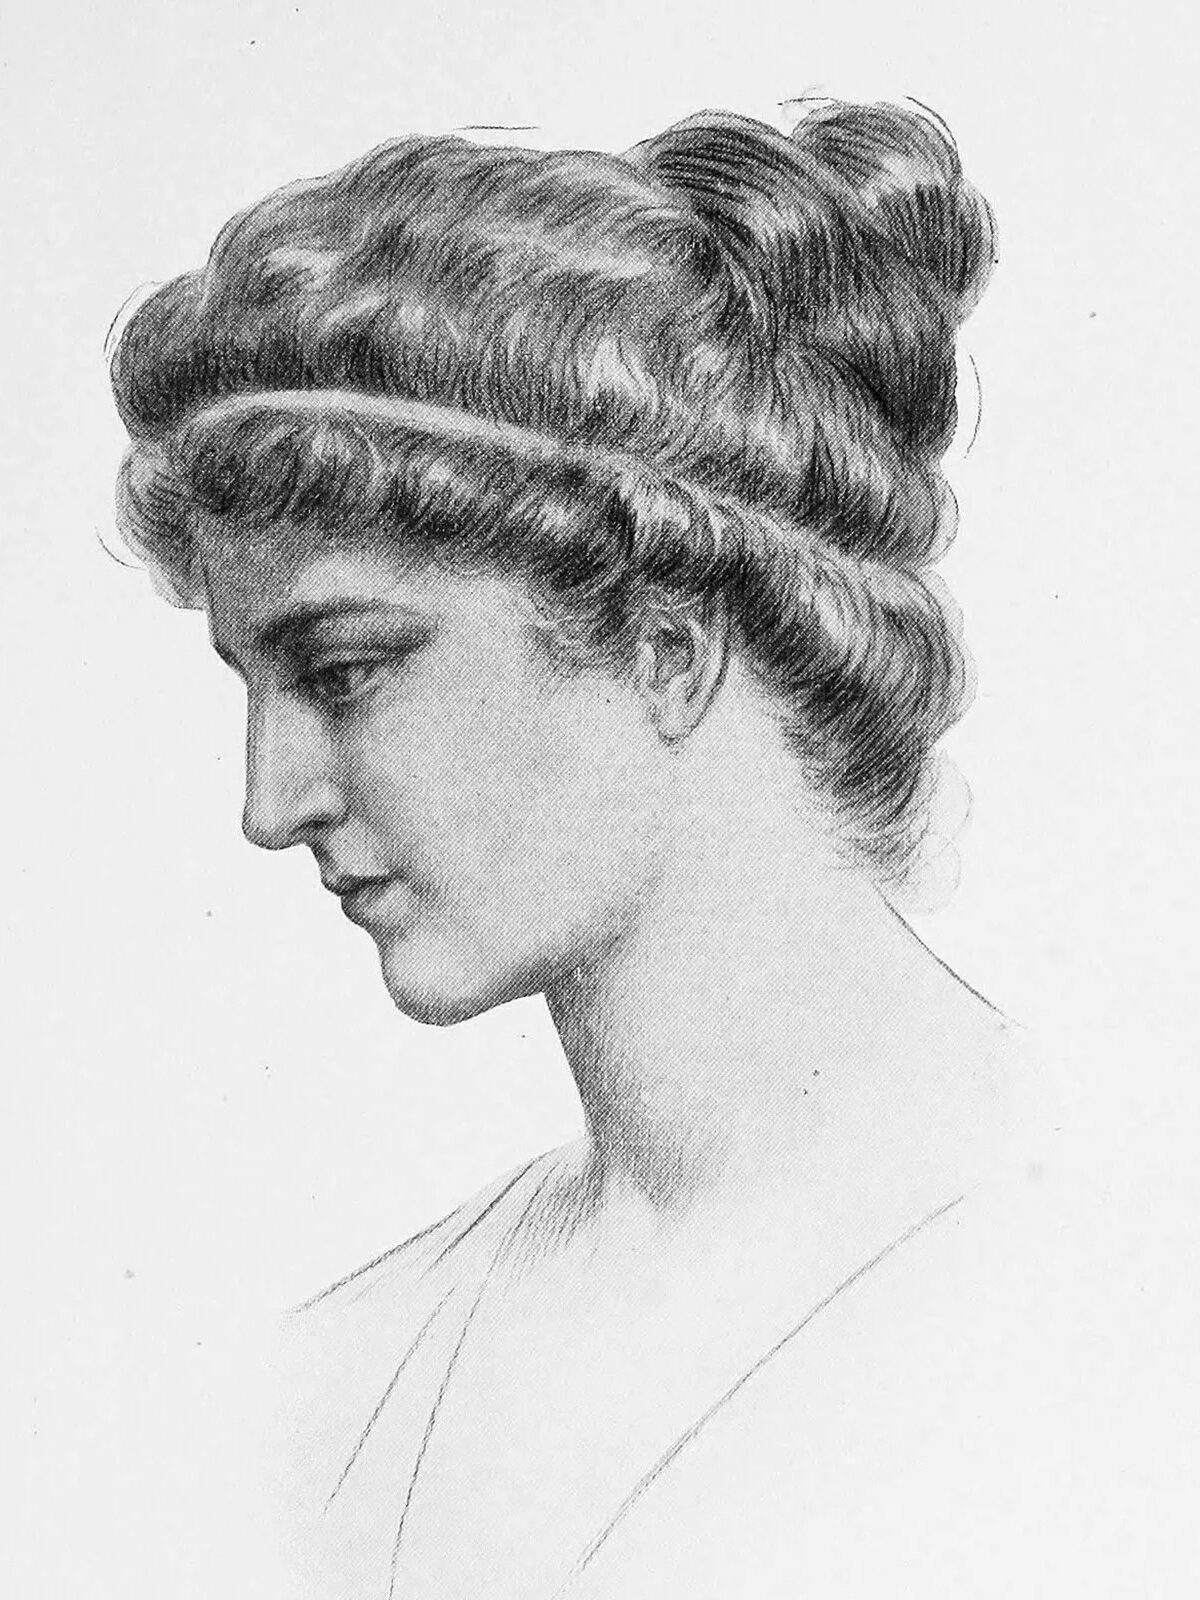 Sketch of women philosopher Hypatia of Alexandria